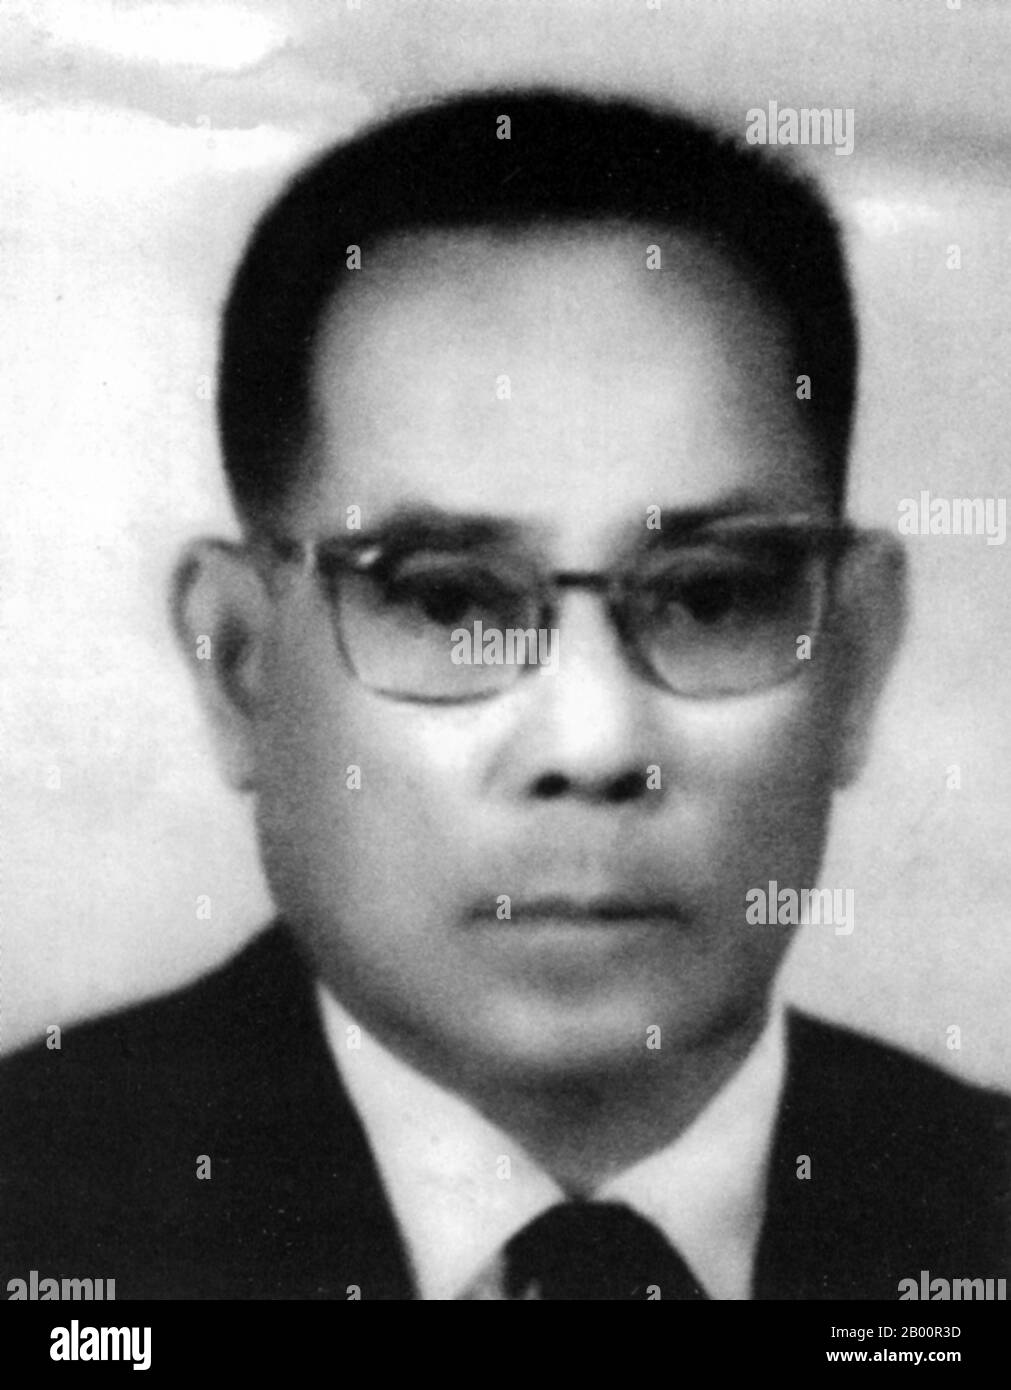 Kambodscha: Sohn Ngoc Thanh (1908–1977) war ein kambodschanischer Nationalist und republikanischer Politiker. Son Ngoc Thanh (1908–1977) war ein kambodschanischer Nationalist und republikanischer Politiker, mit einer langen Geschichte als Rebell und (für kurze Zeit) als Minister der Regierung. Er war ein Erzgegner von König Norodom Sihanouk und ein Antikommunist. Er starb 1977 in Haft in Vietnam. Stockfoto